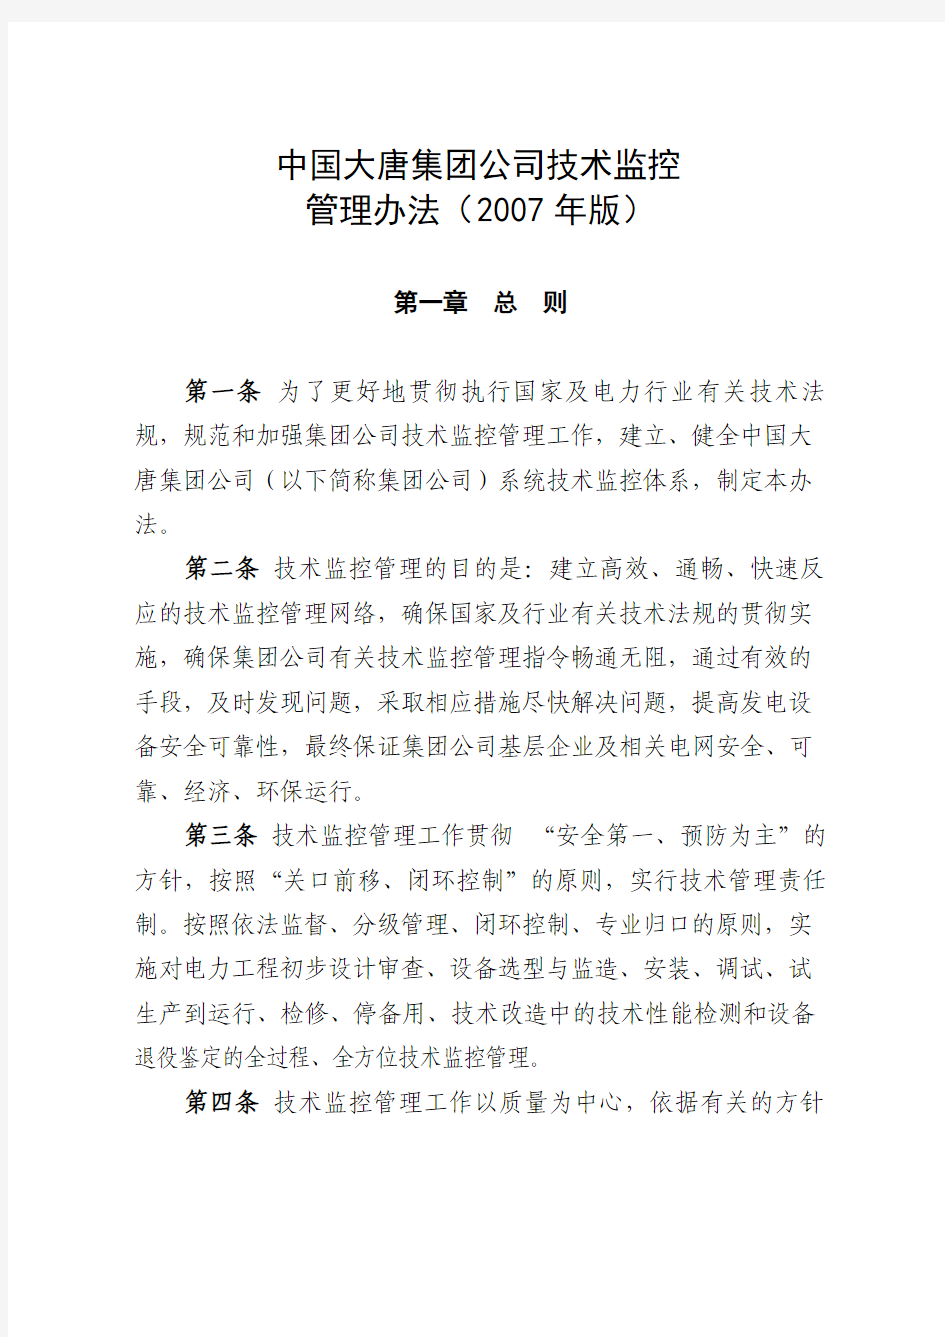 中国大唐集团公司技术监控办法(2007版主要部分)